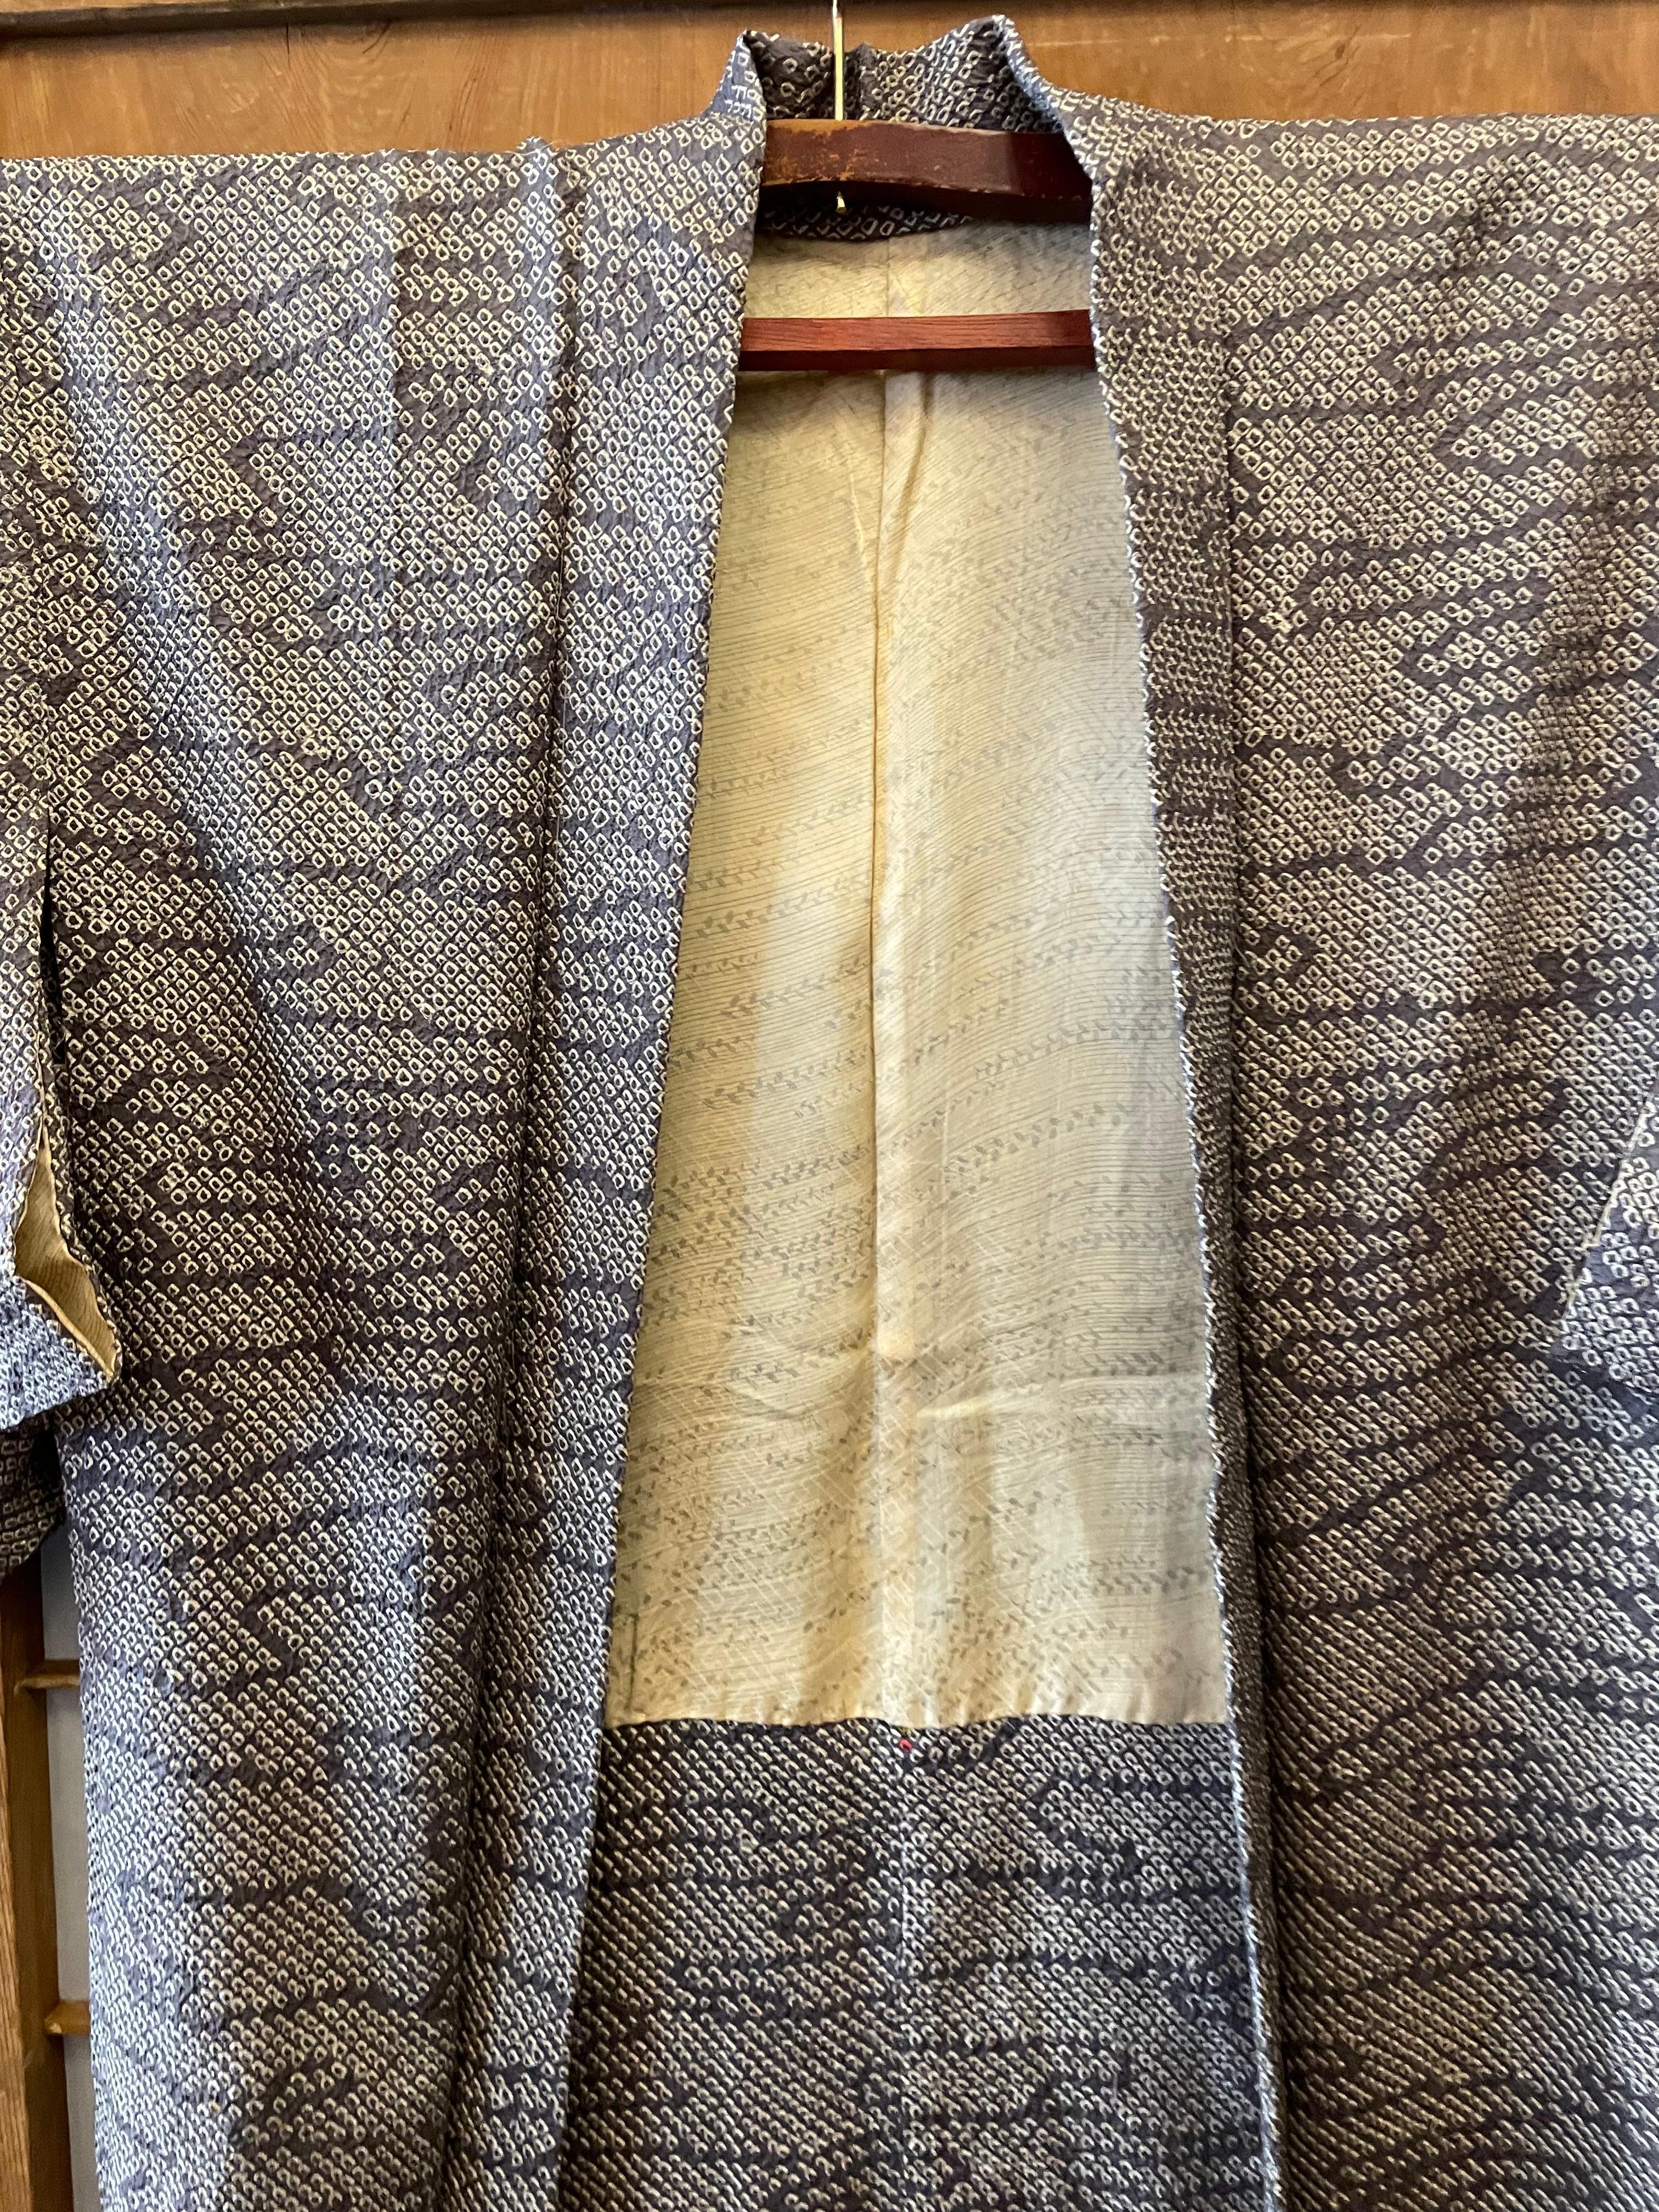 Il s'agit d'une veste en soie fabriquée au Japon. Ce type de Calle est appelé 